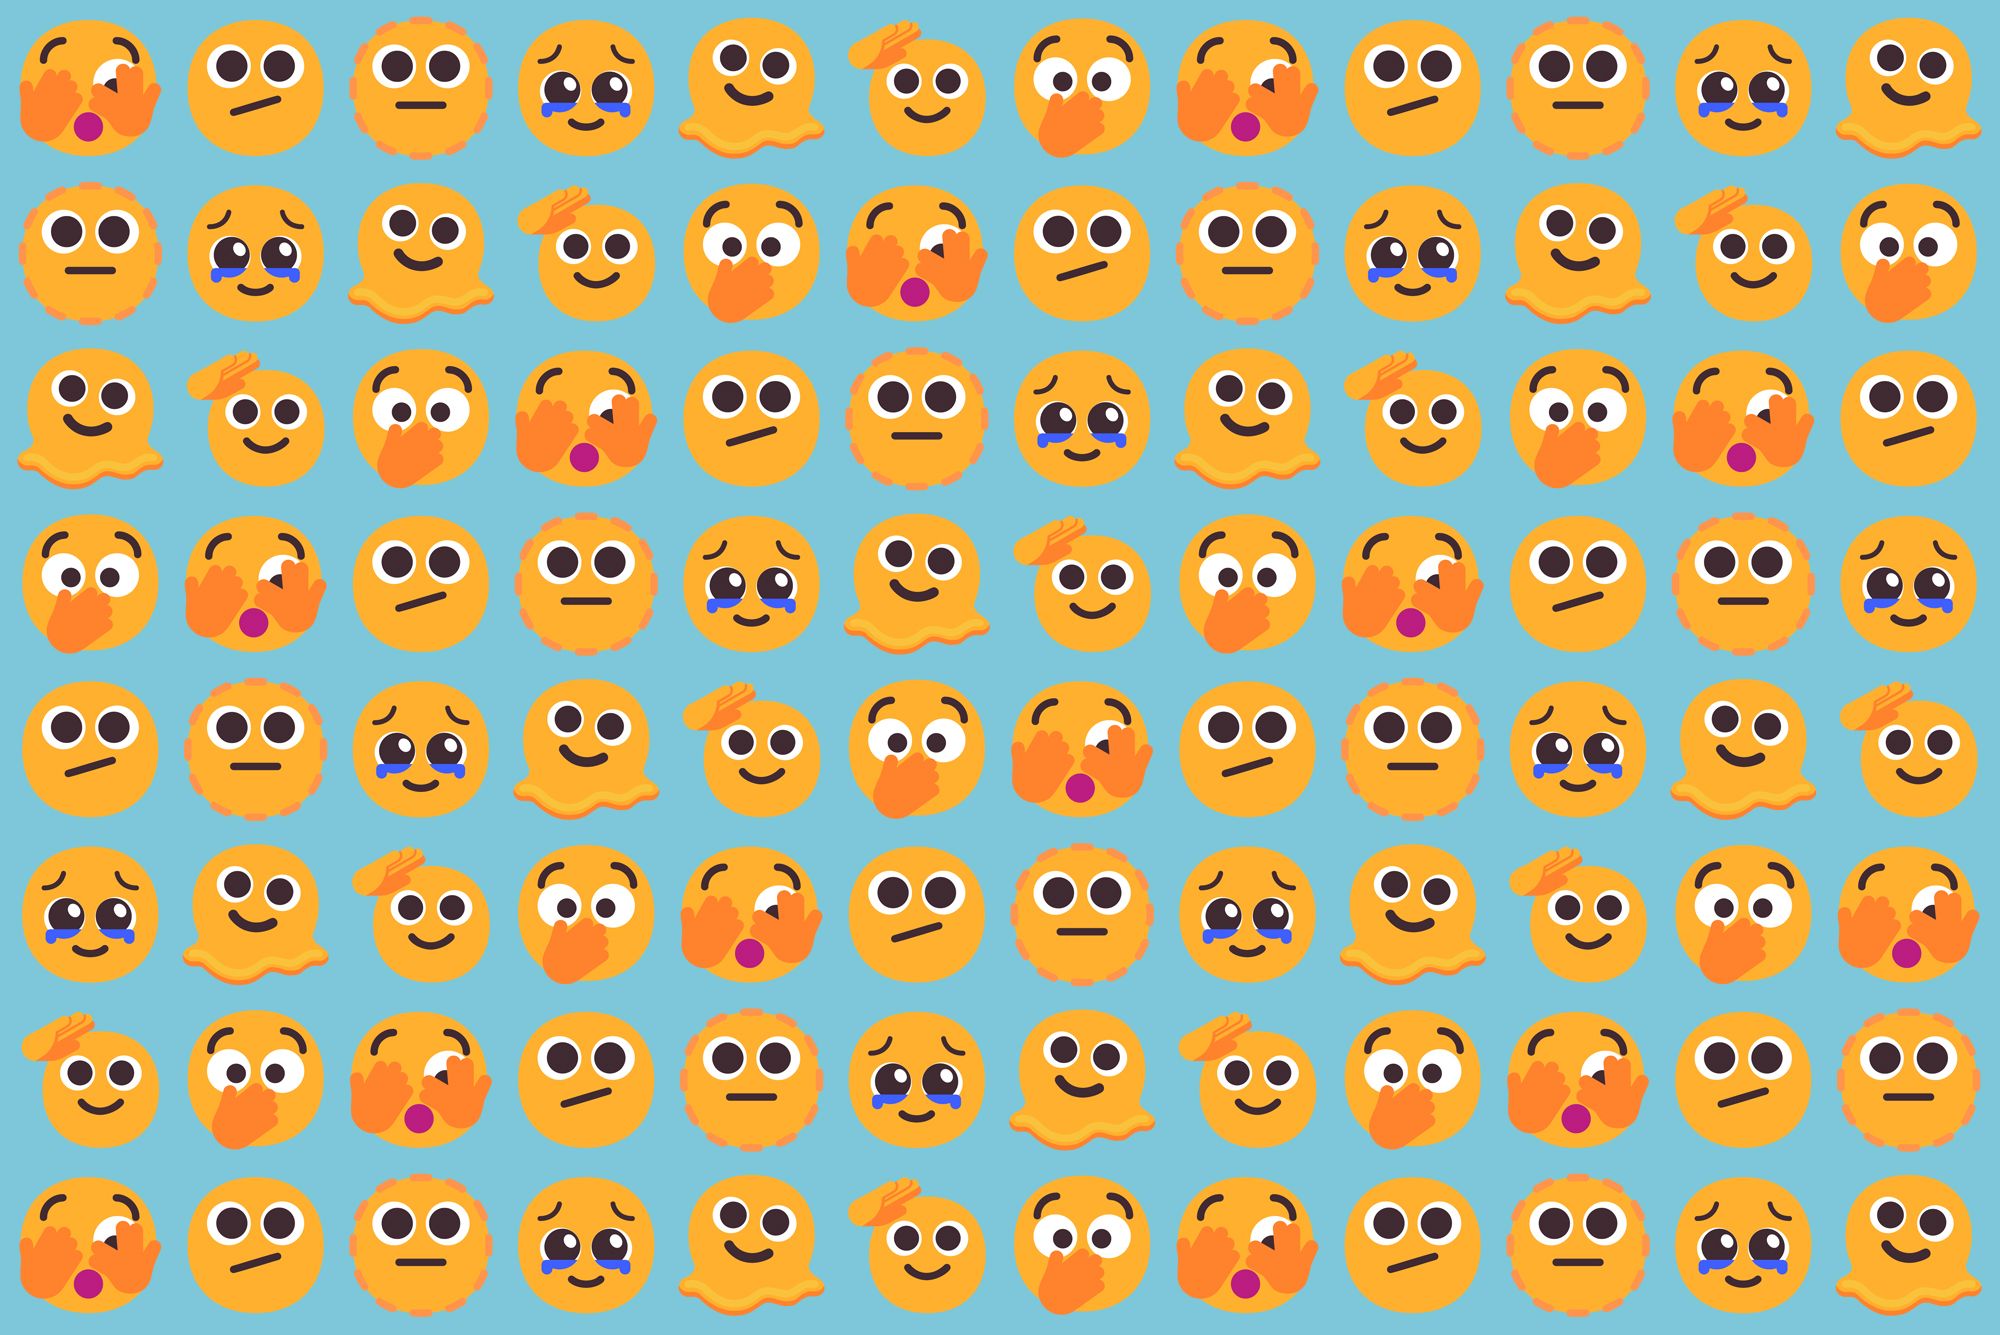 2022 emojis background